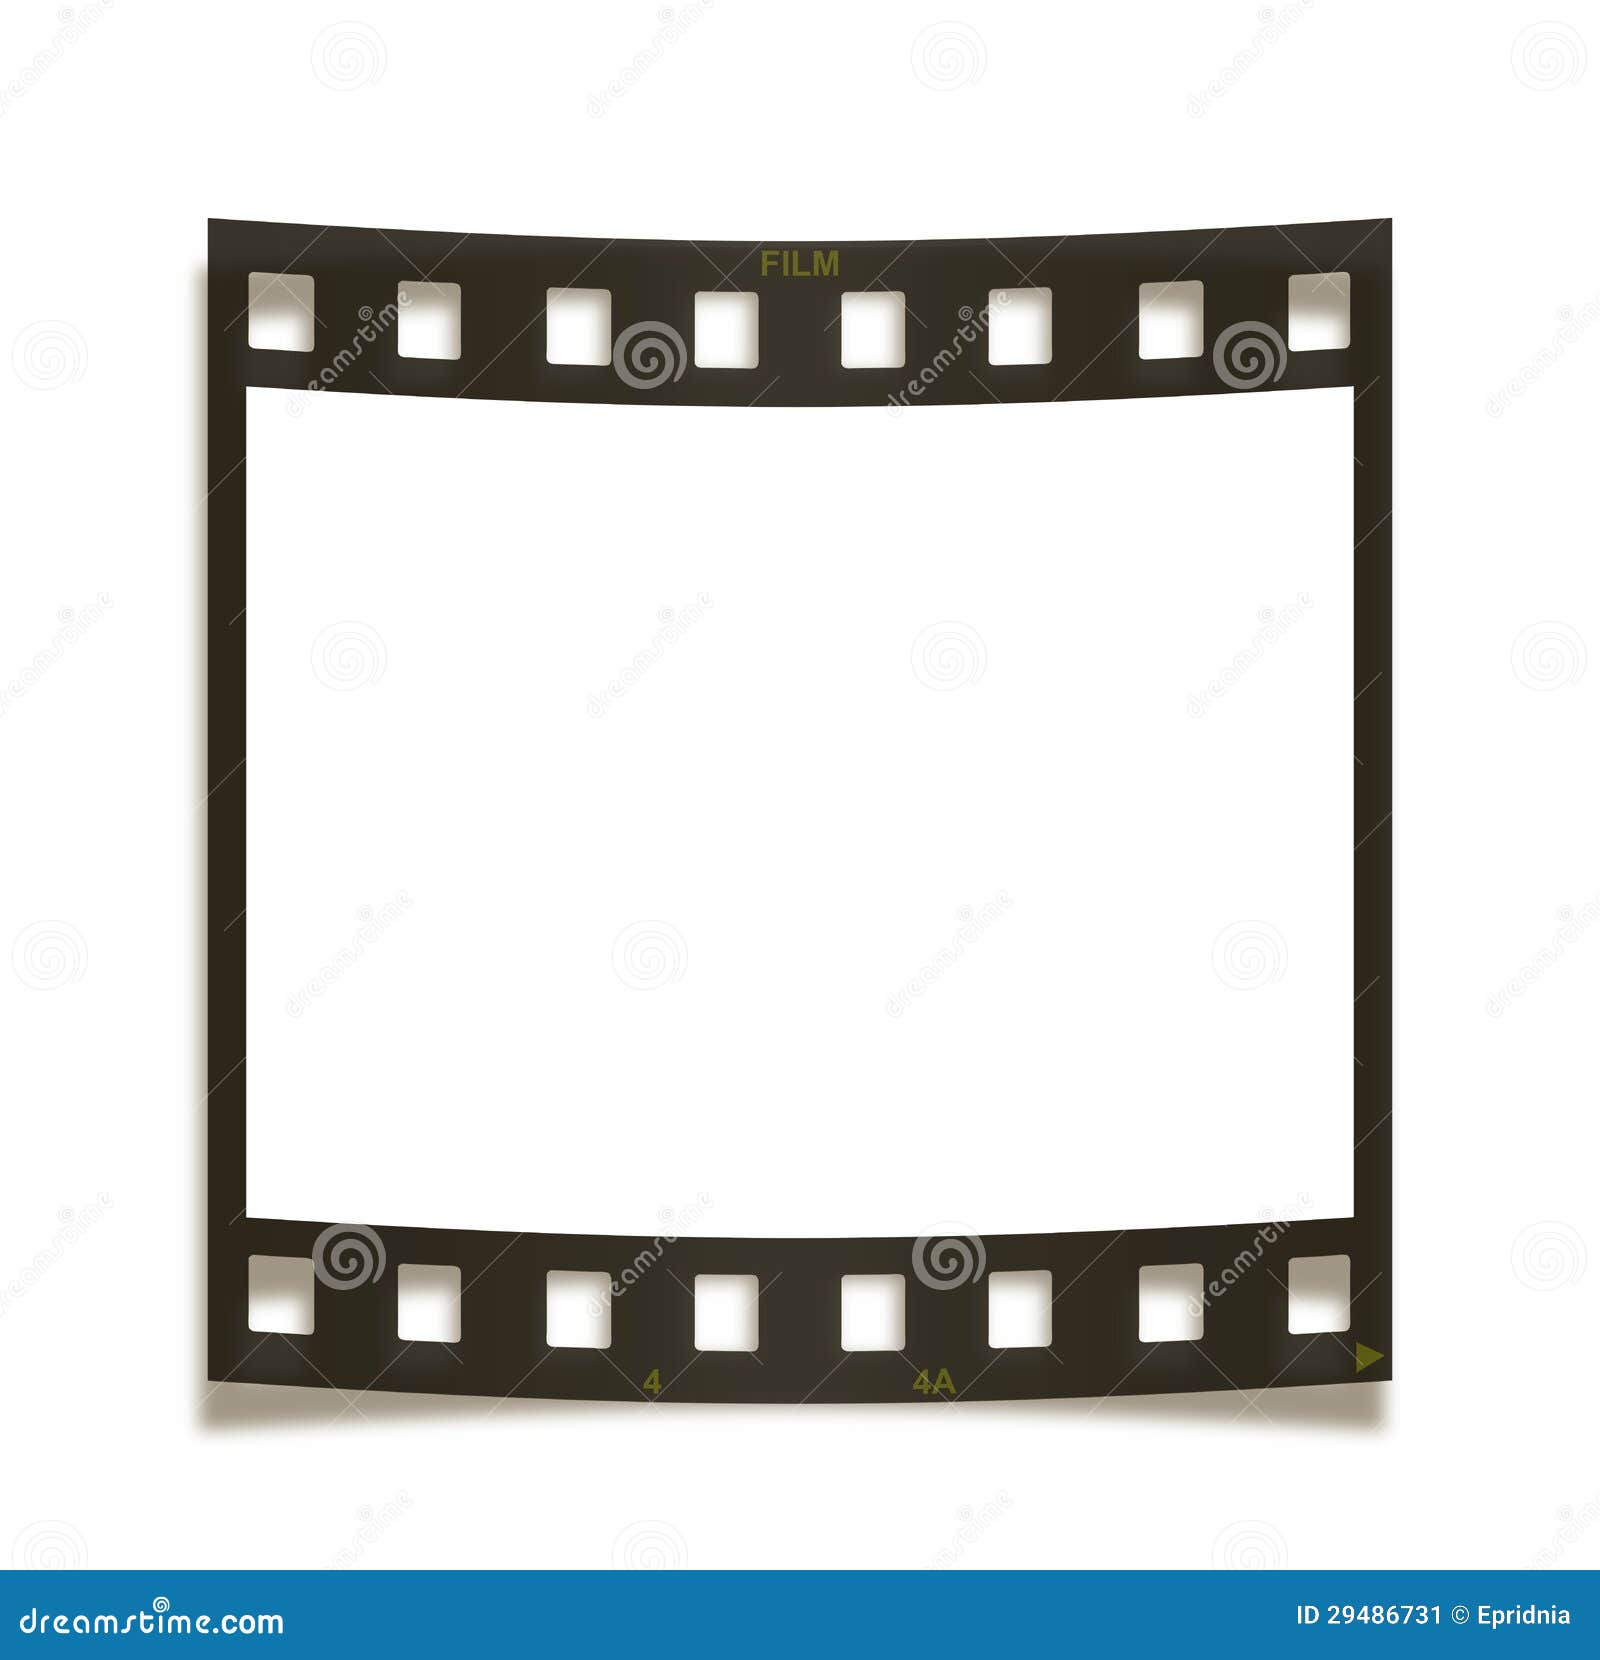 Blank film frame on white background.